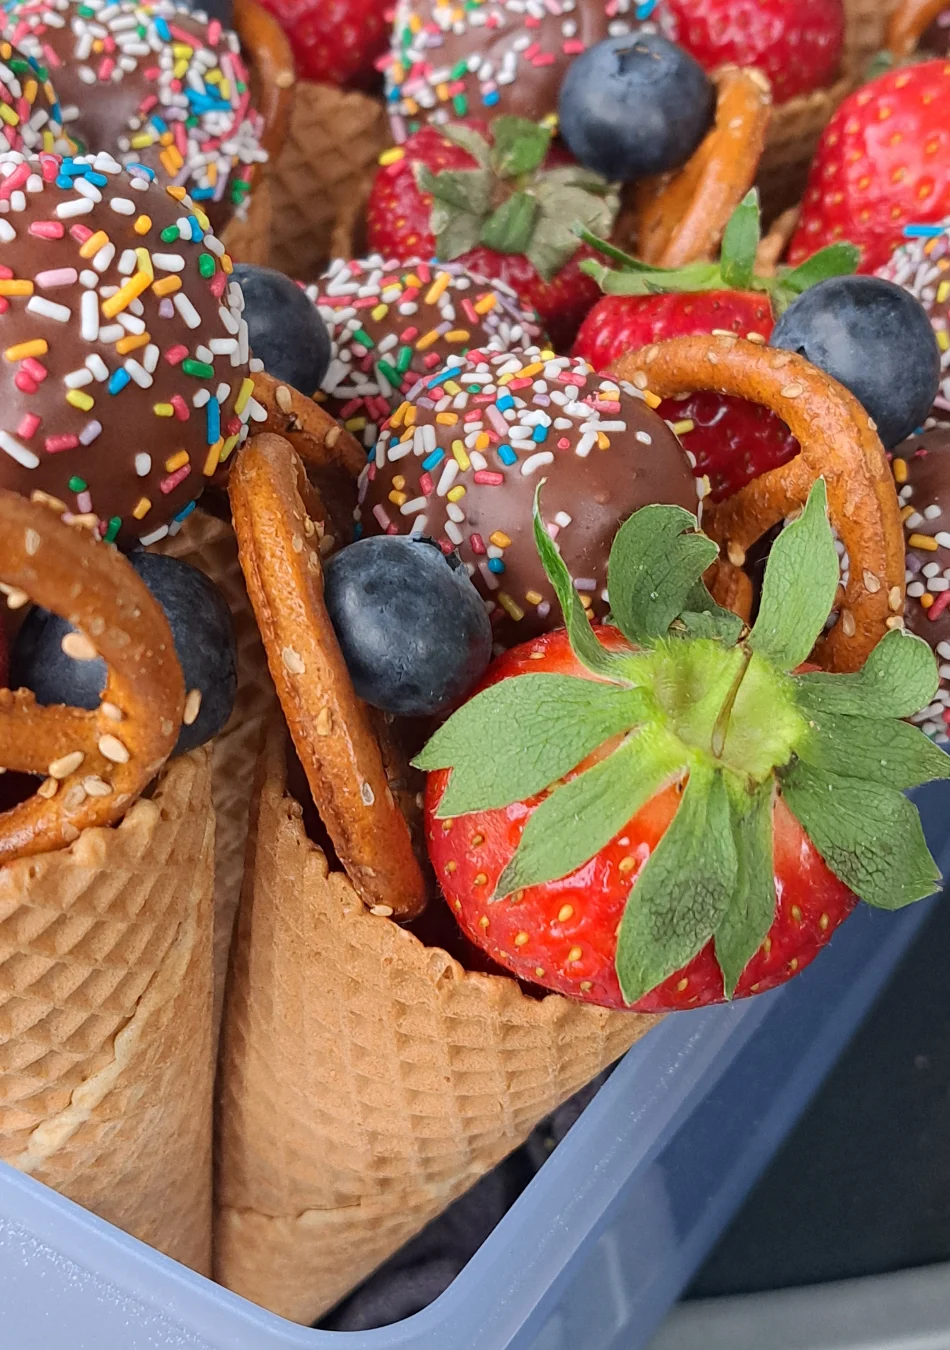 Kunterbunte-Eistüte-ist-gefüllt-mit-frischem-Obst-und Kuchen am Stiel (Cake pops).